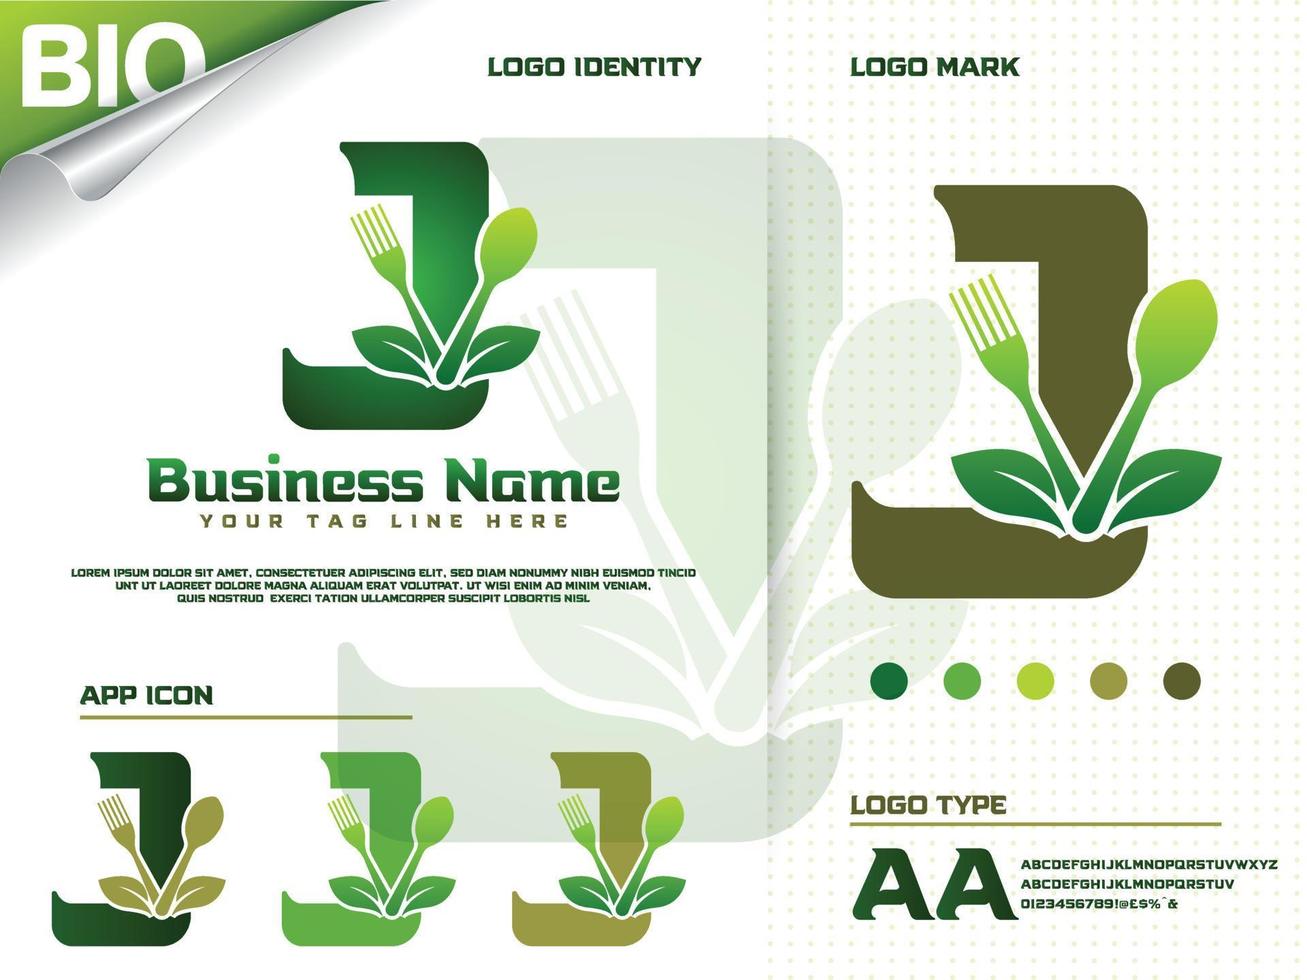 friska mat brev j logotyp design med kreativ grön blad vektor